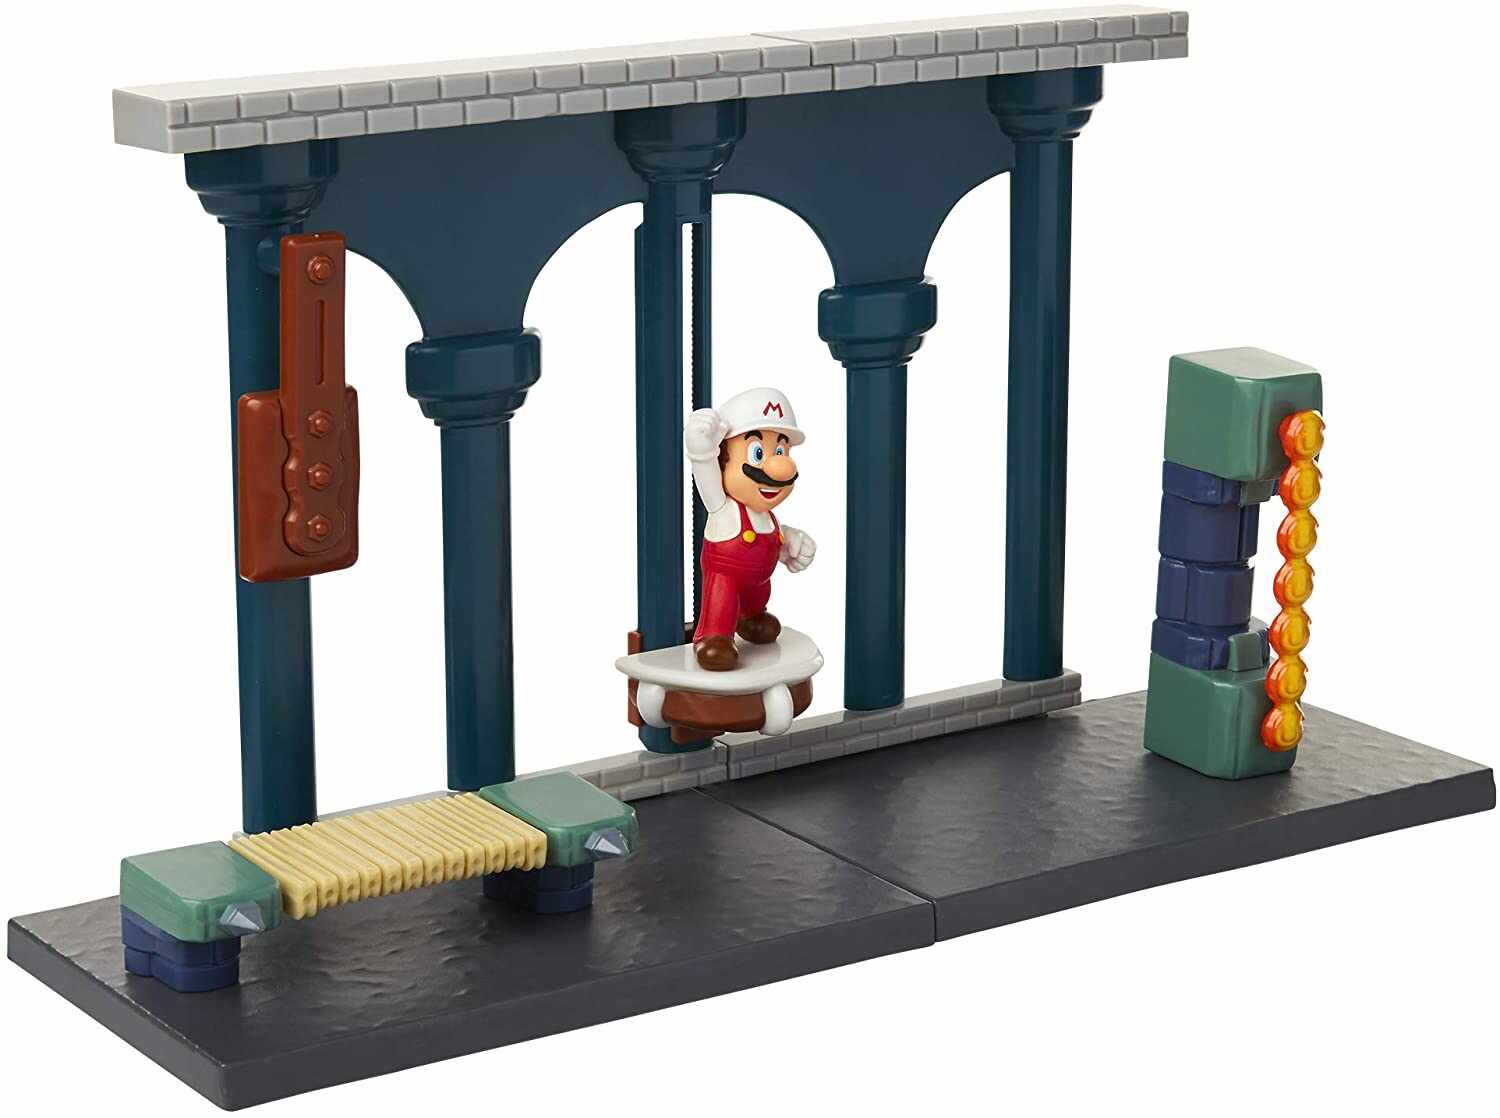 Set de joaca Super Mario Lava Castle cu figurina 6 cm